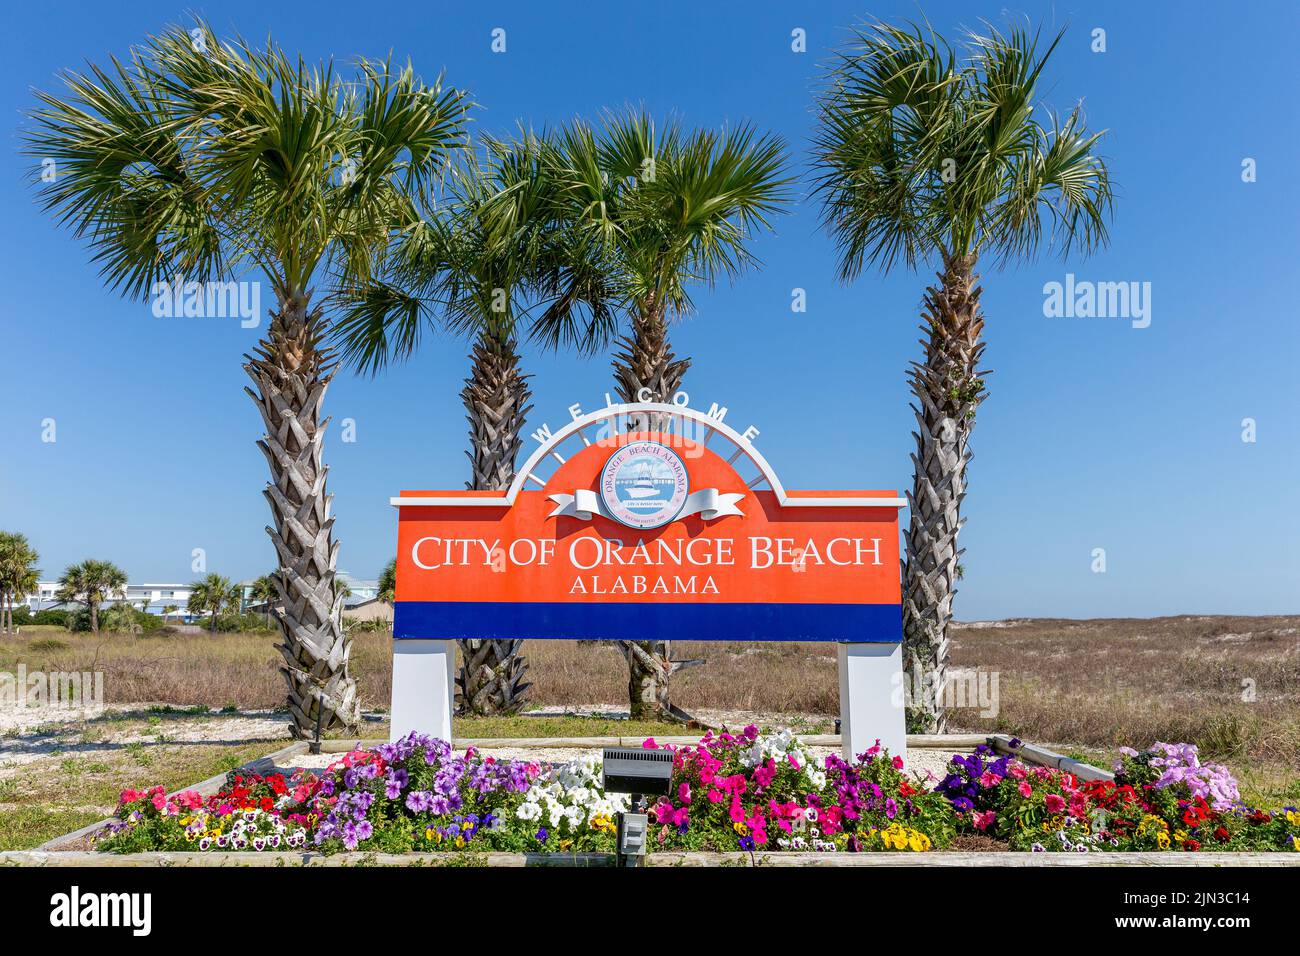 Orange Beach, AL - 27. März 2022: Begrüßungsschild für die Stadt Orange Beach, Alabama. Orange Beach ist aufgrund seiner Lage ein immer beliebter werdender Touristenort Stockfoto